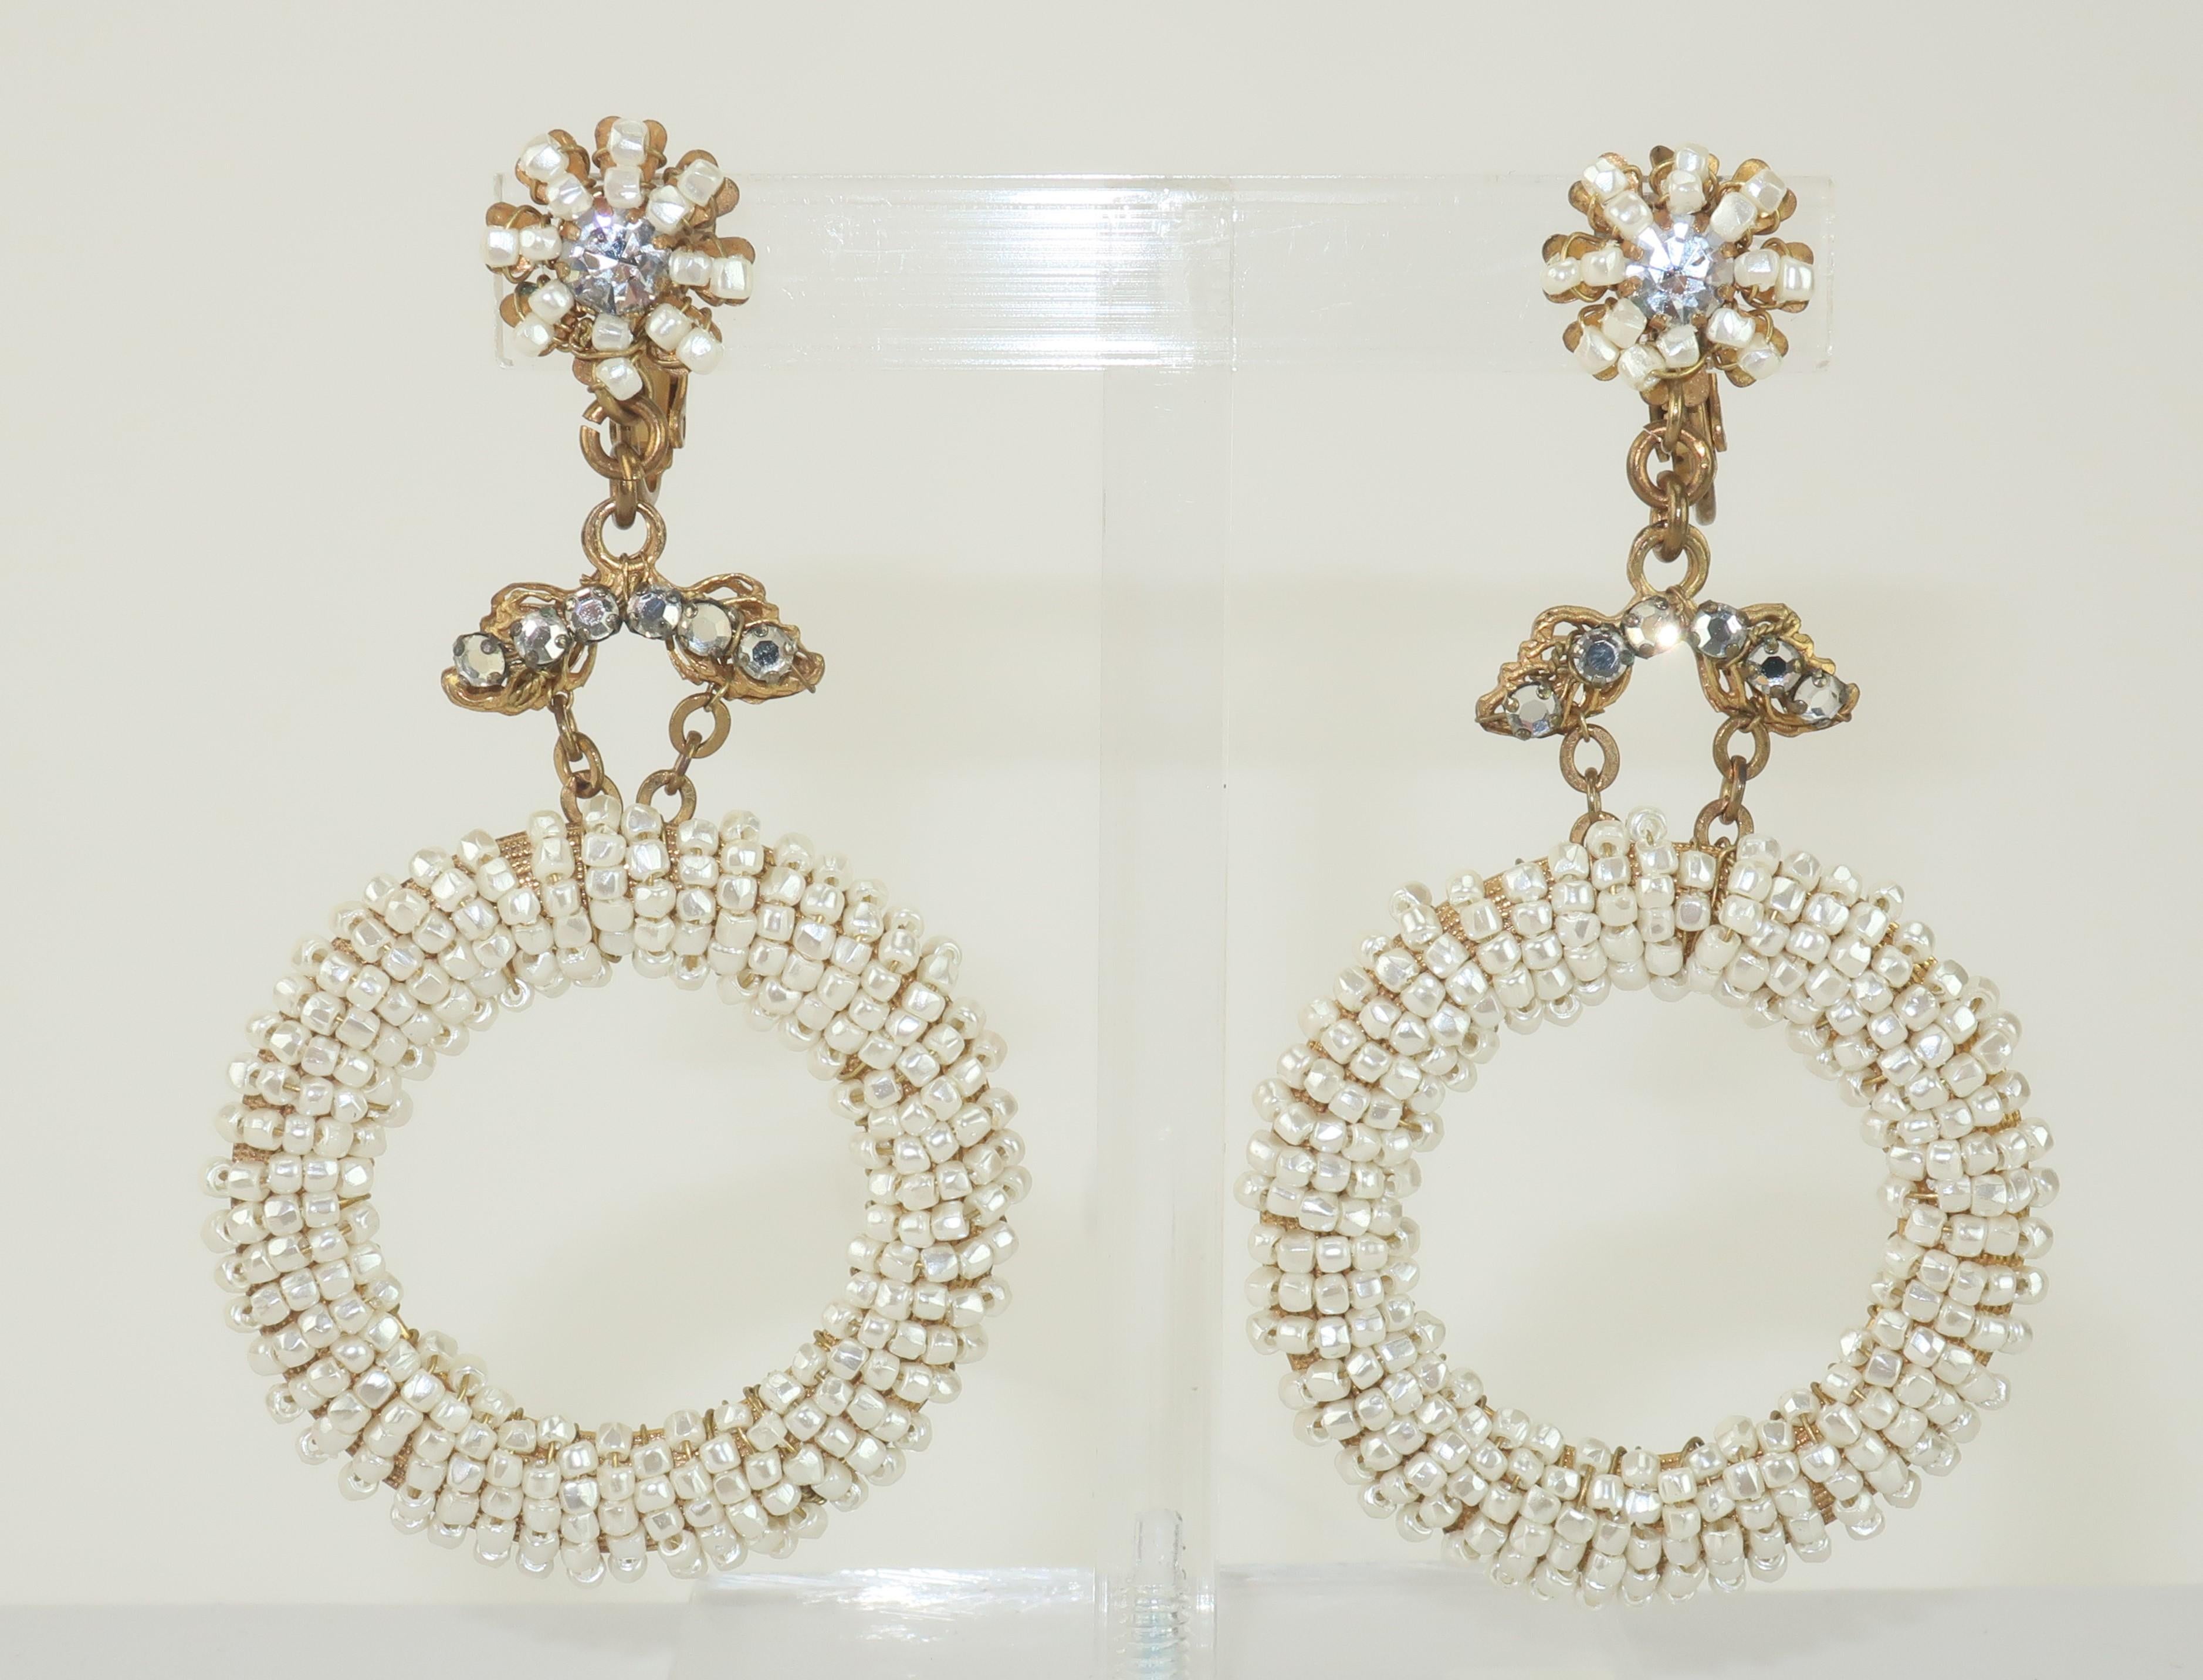 C.1960 - Boucles d'oreilles Miriam Haskell avec anneau en J à clipser.  Ces boucles d'oreilles éthérées sont une belle combinaison de l'esthétique baroque traditionnelle de Haskell dans une silhouette plus jeune.  Les minuscules perles de rocaille